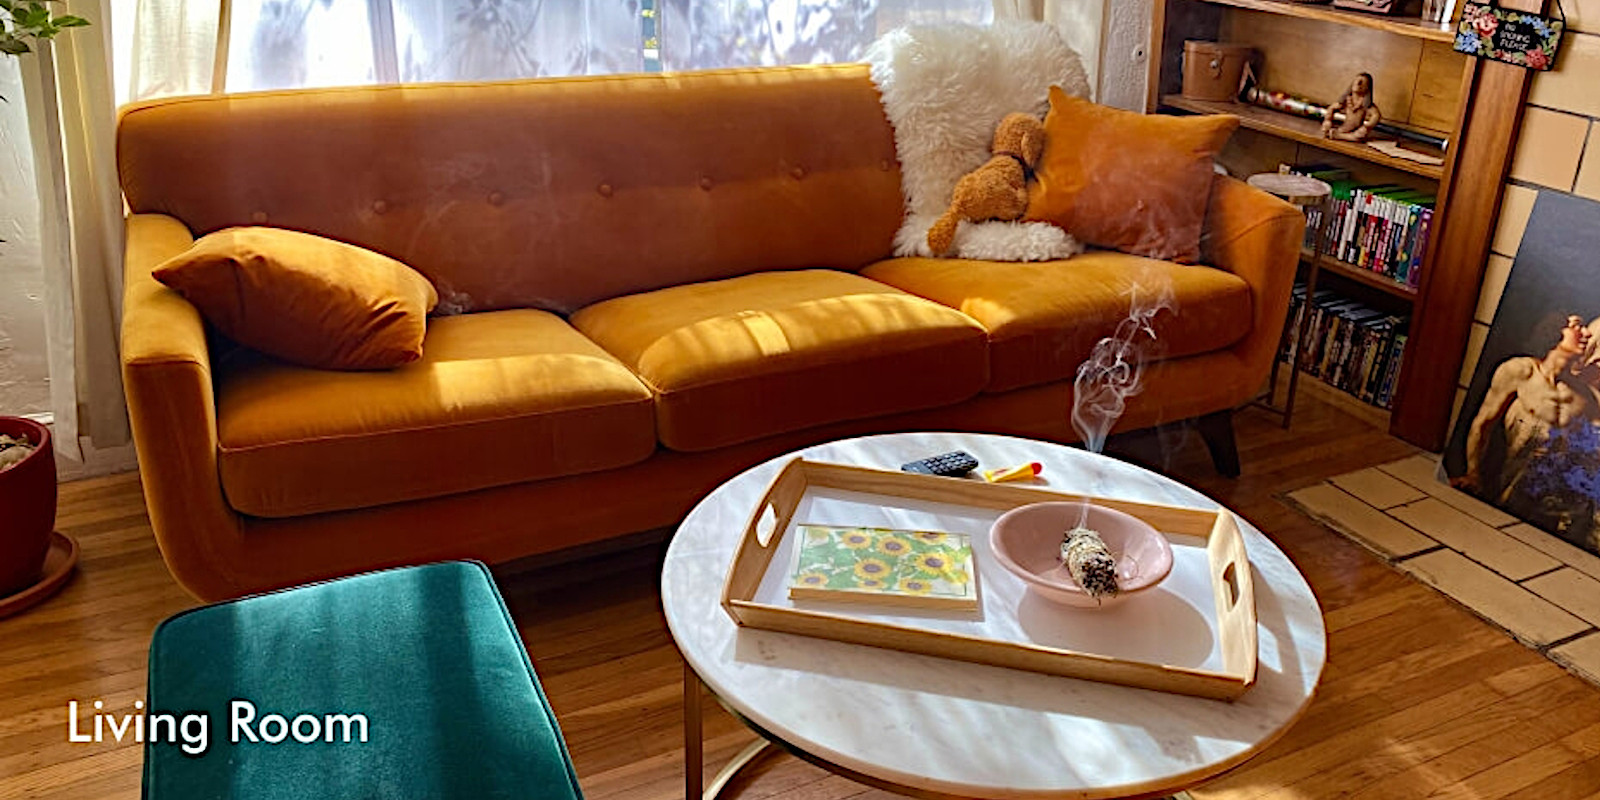 Livingroom furniture deal